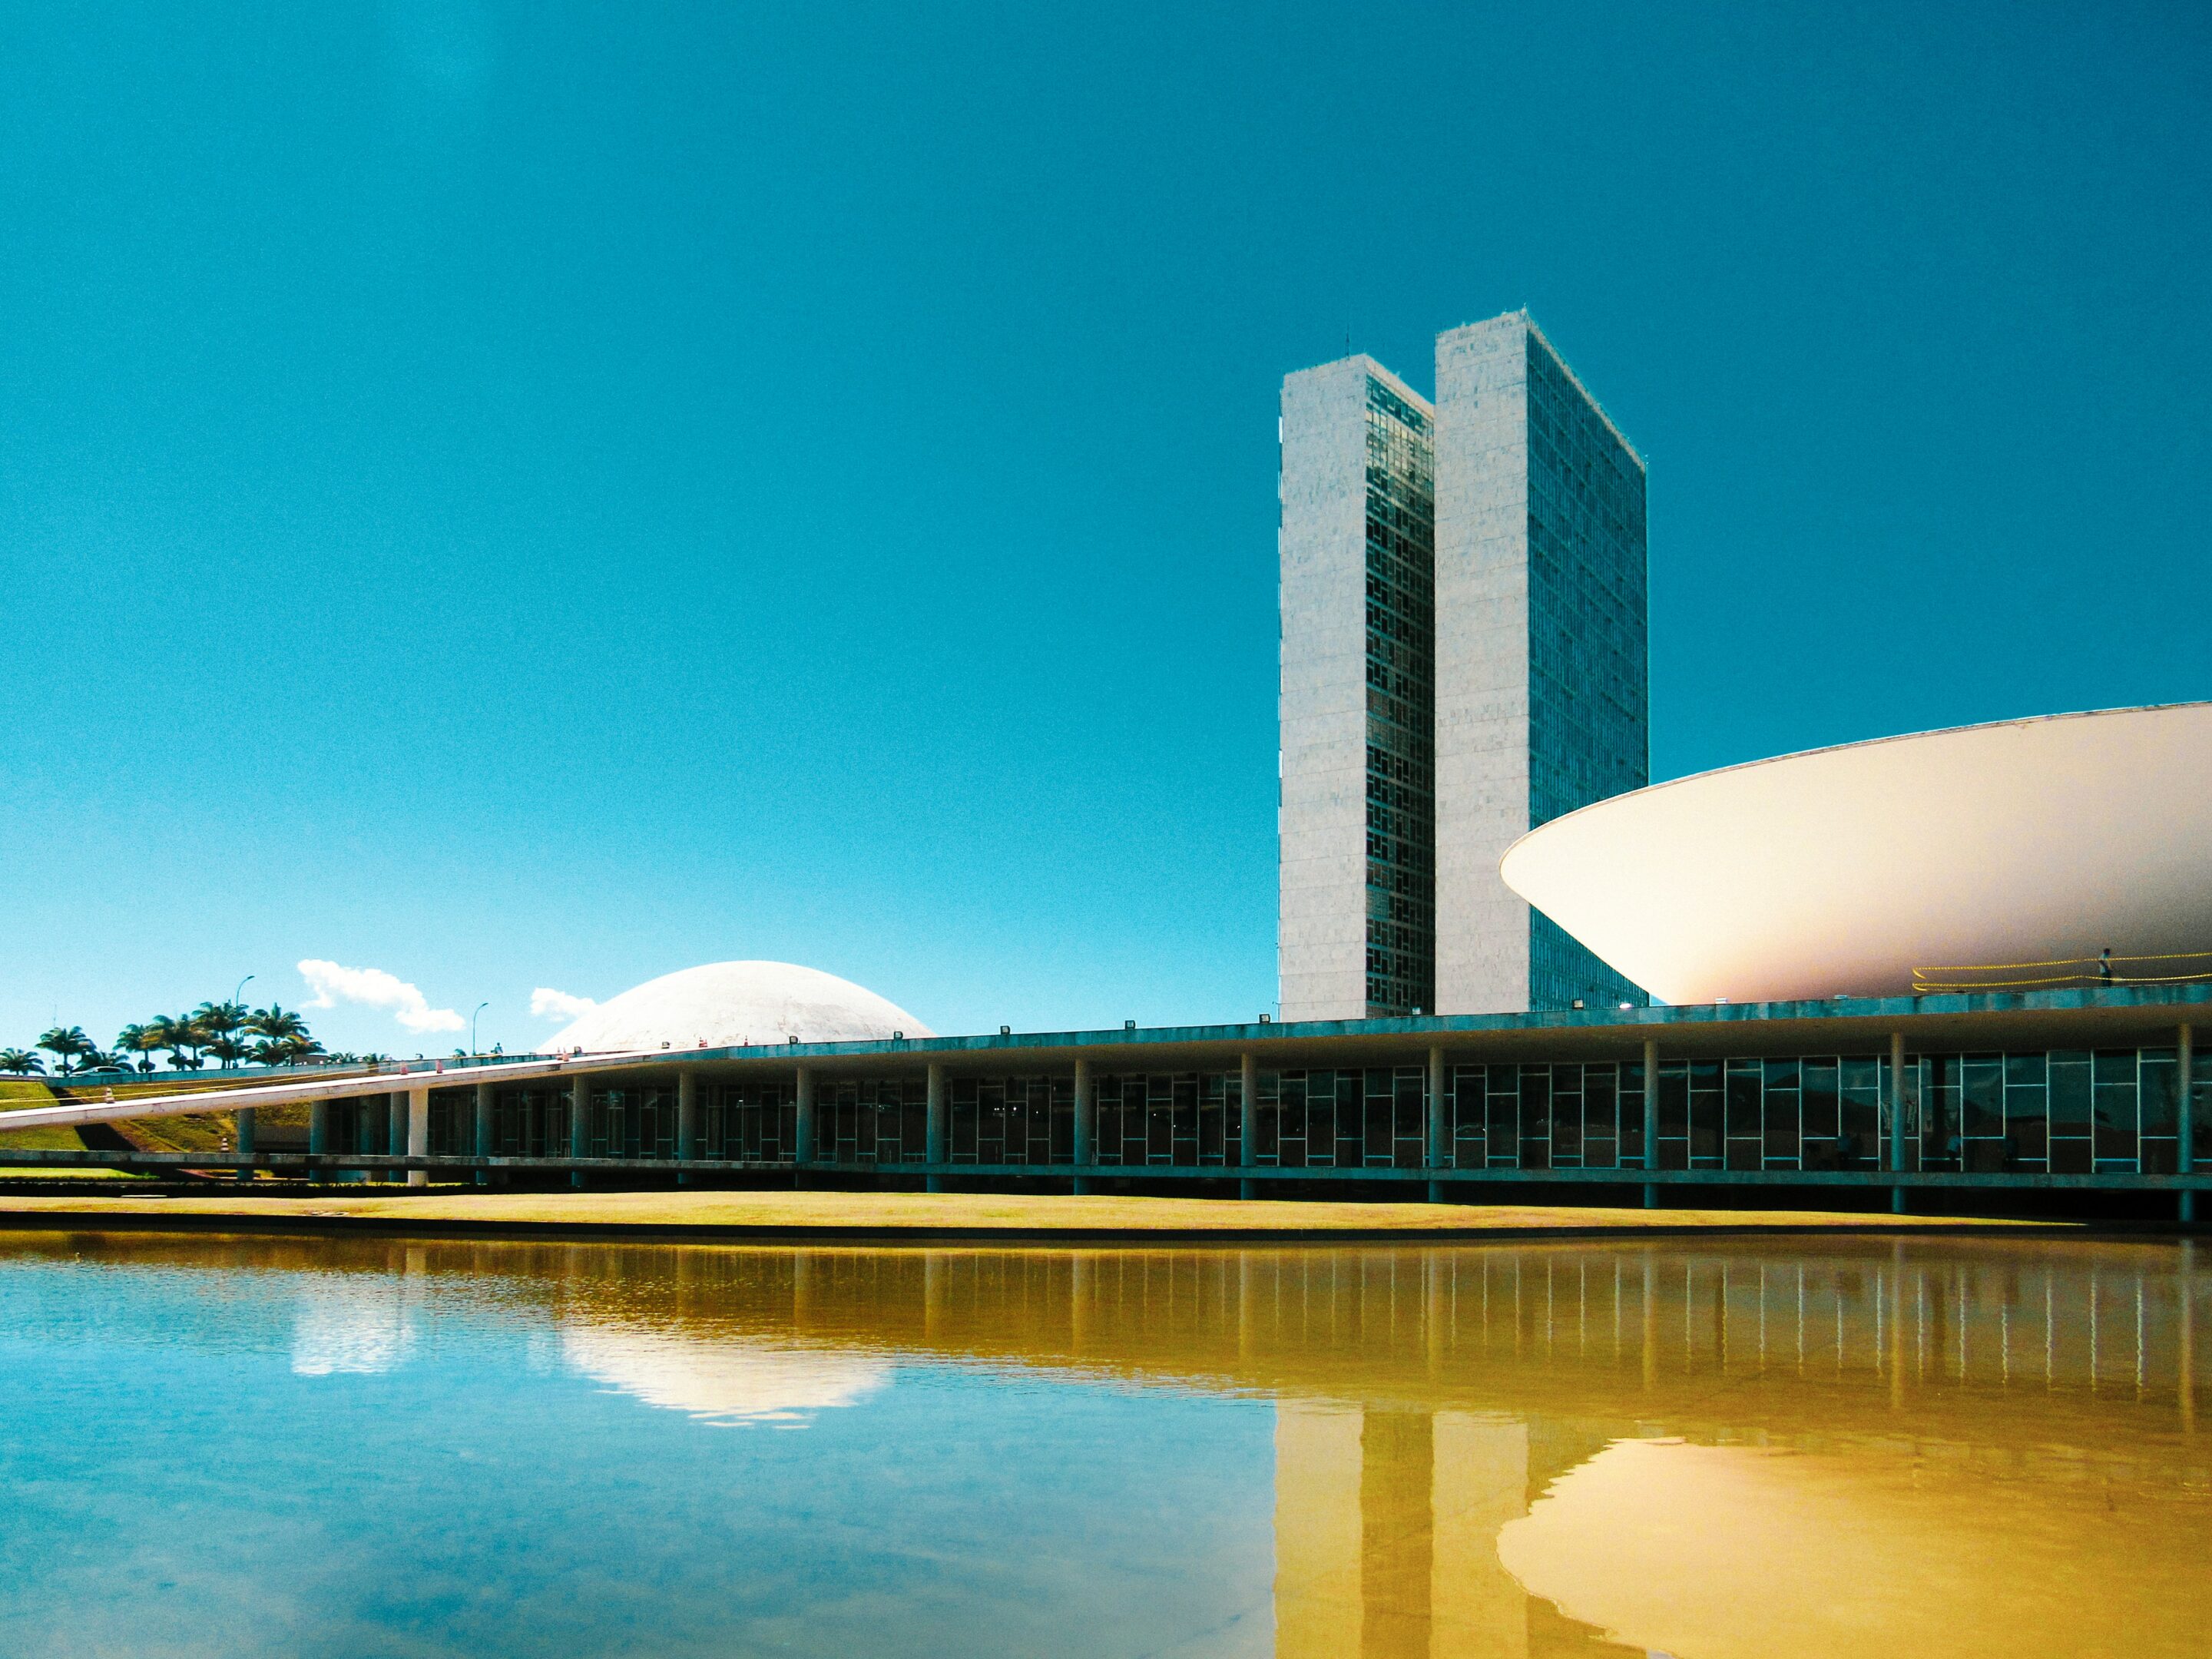 Brasilia. Beauté architecturale pour un pays neuf
Crédits : Unsplash